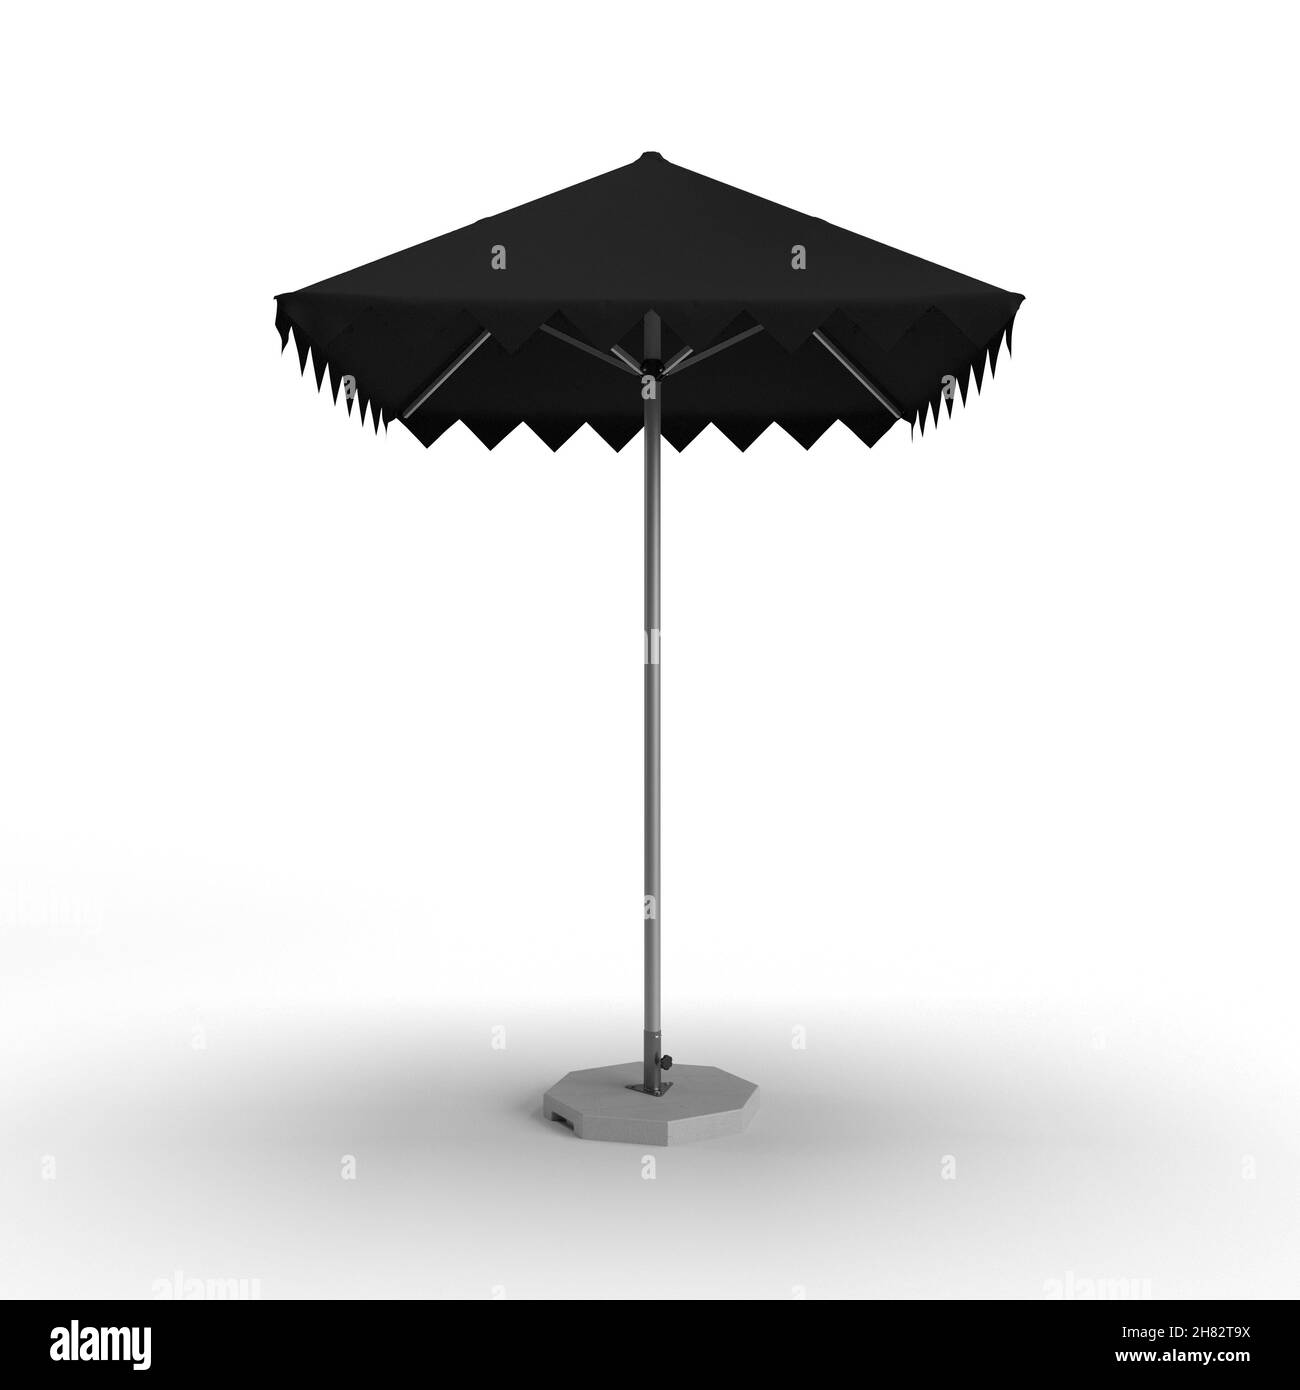 Beach parasol isolated Banque d'images noir et blanc - Alamy